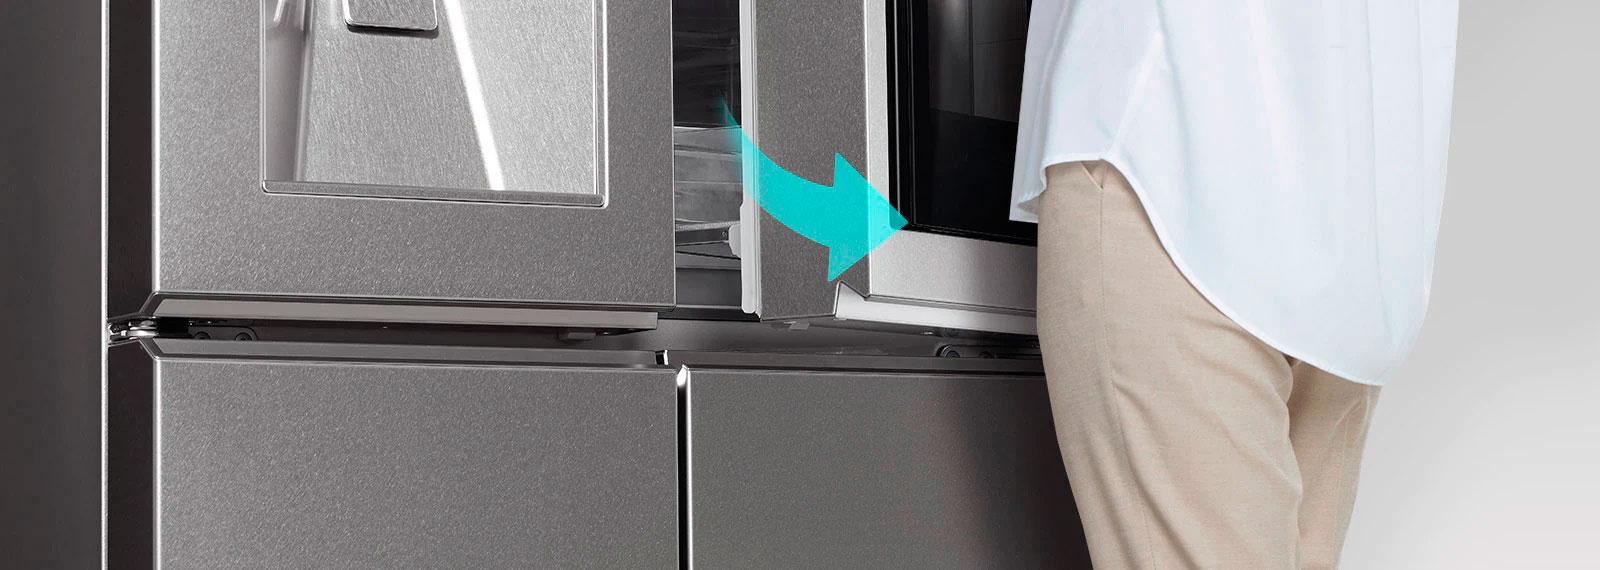 LG холодильник можно открыть даже ногой без усилий